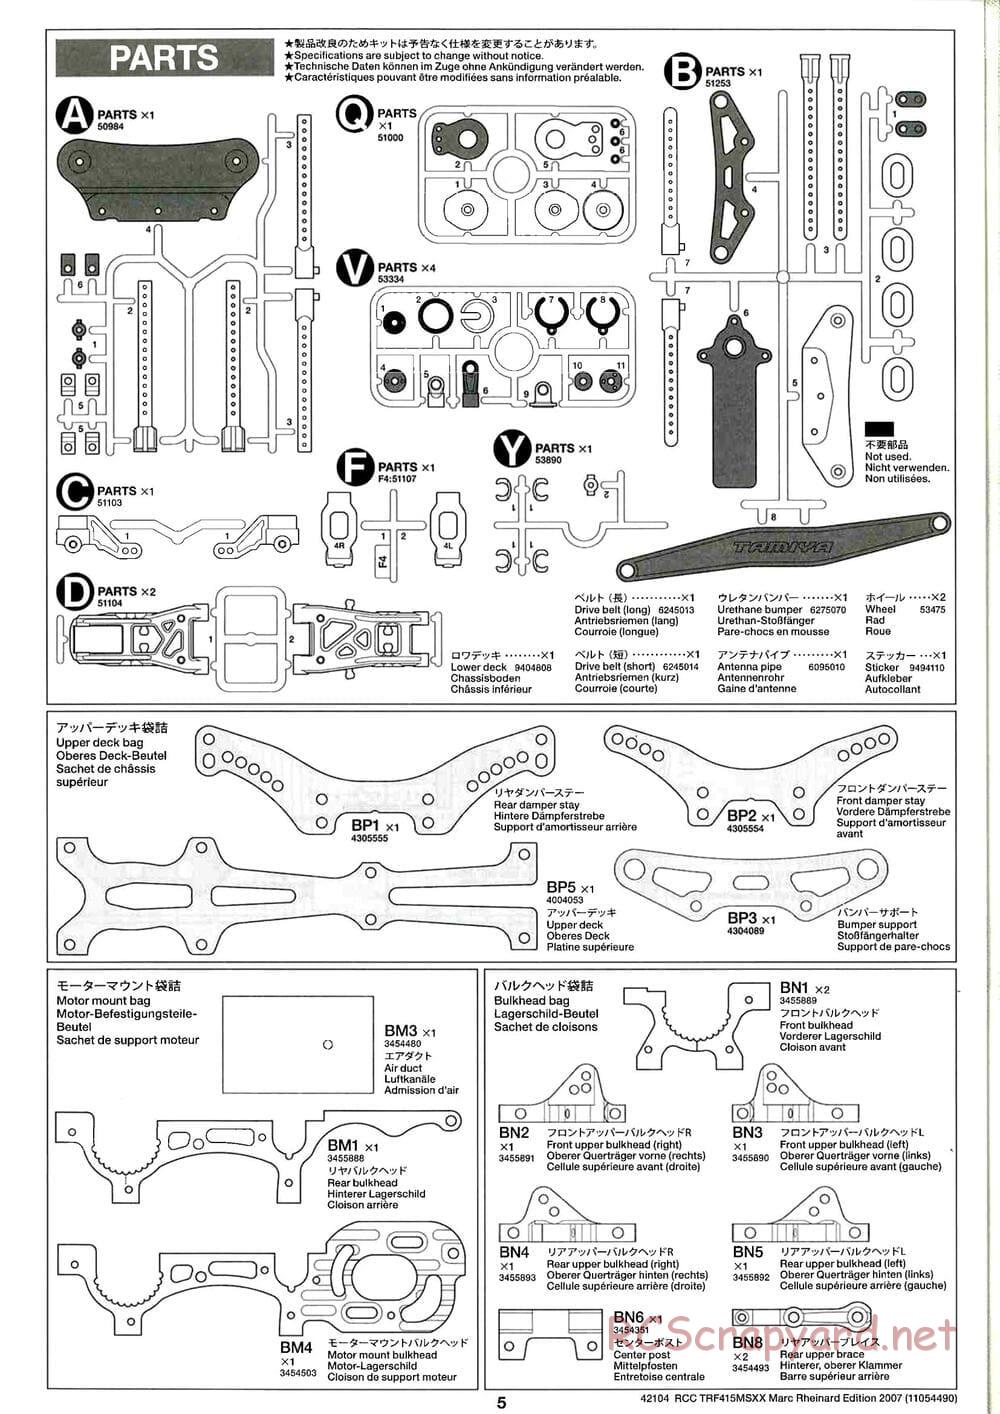 Tamiya - TRF415 MSXX - Marc Rheinard Edition 2007 Chassis - Manual - Page 5